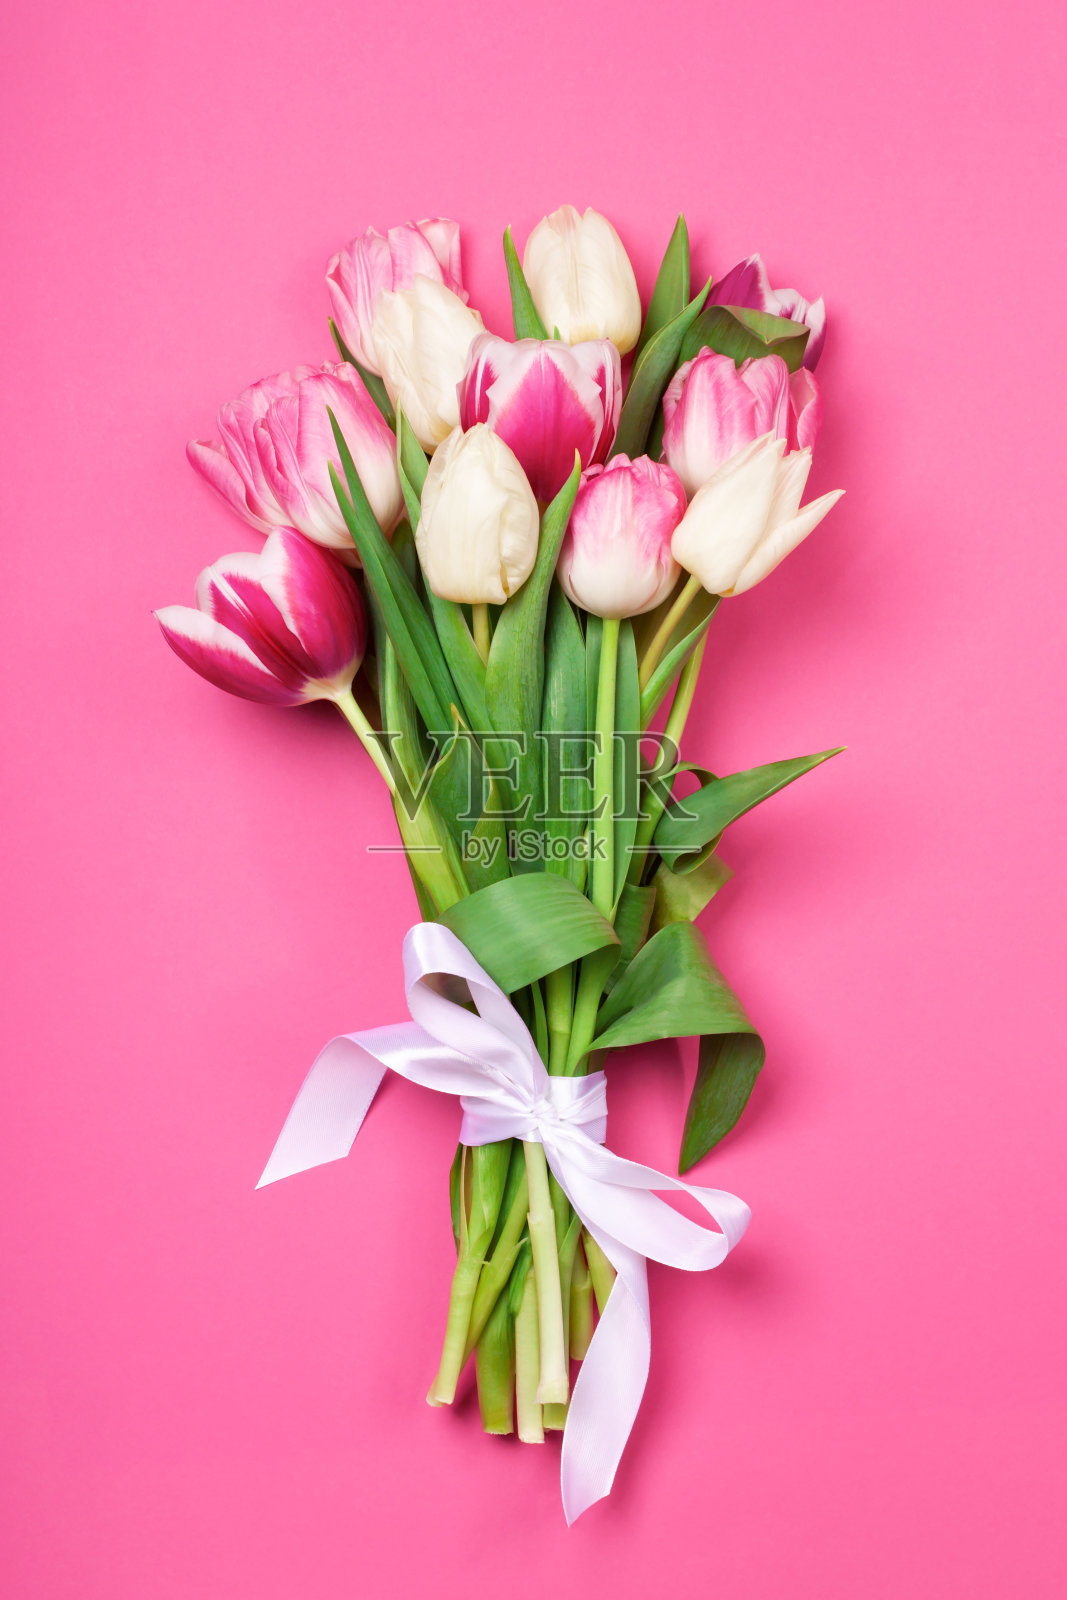 一束粉红色和白色的郁金香照片摄影图片